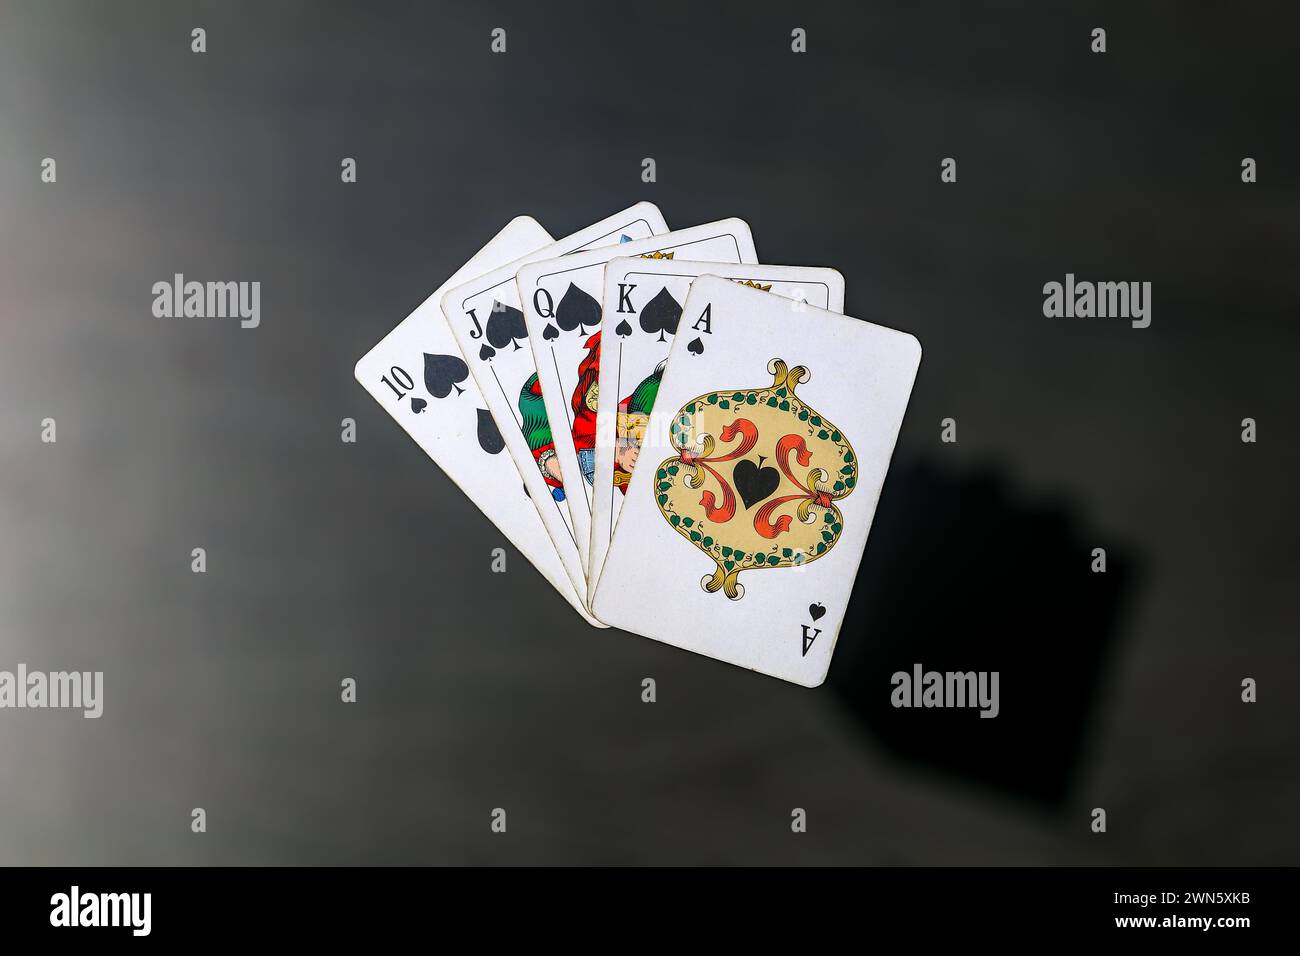 Card game bridge poker blackjack gambling poker game Stock Photo